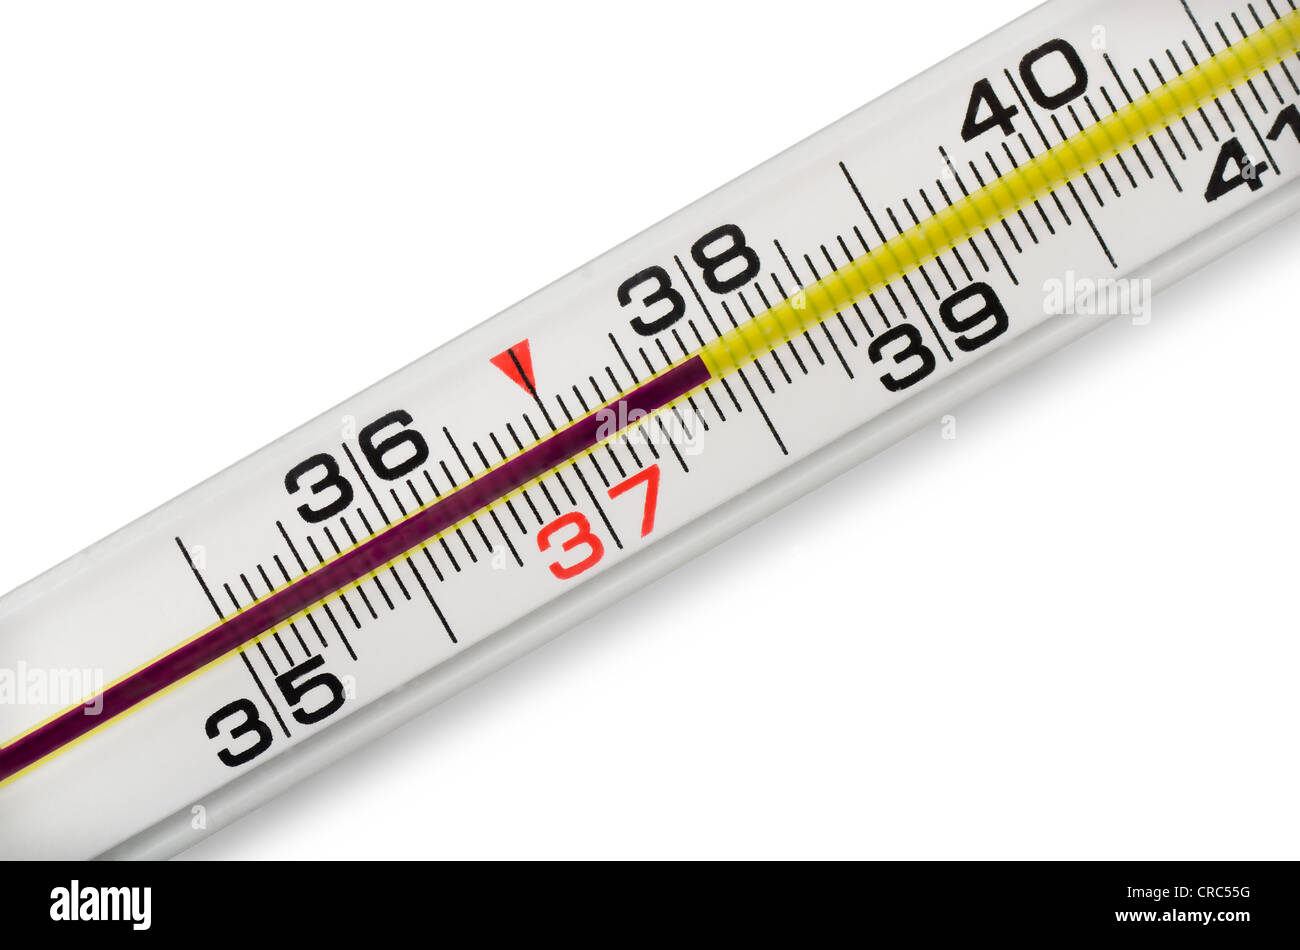 Termometro a mercurio immagini e fotografie stock ad alta risoluzione -  Alamy